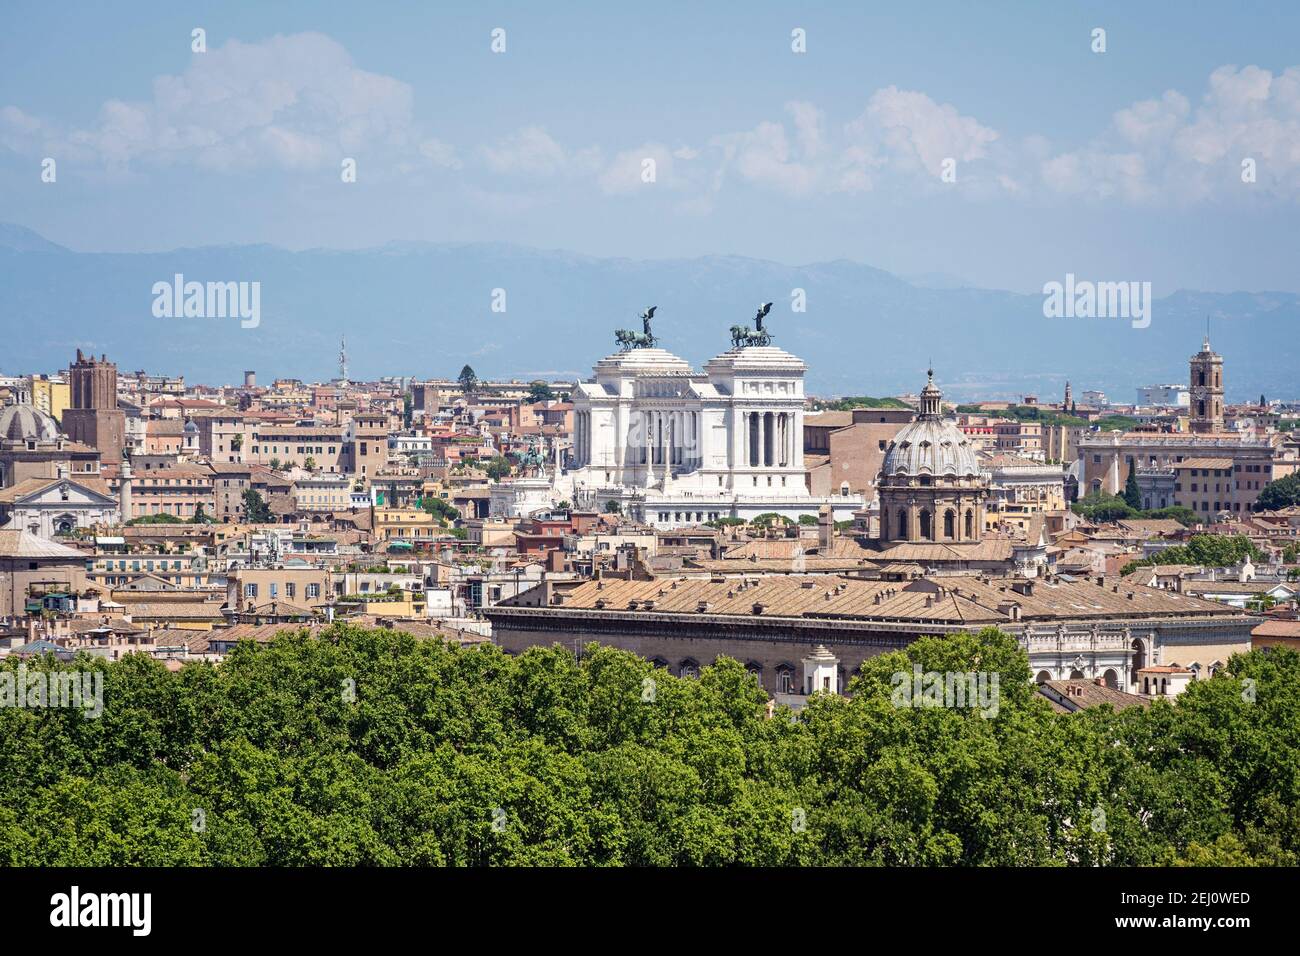 Luftpanoramic Landschaft von Gianicolo Hügel des historischen Zentrums von Rom mit dem nationalen Monumett zu Vittorio Emanuele II.. Rom, Italien Stockfoto